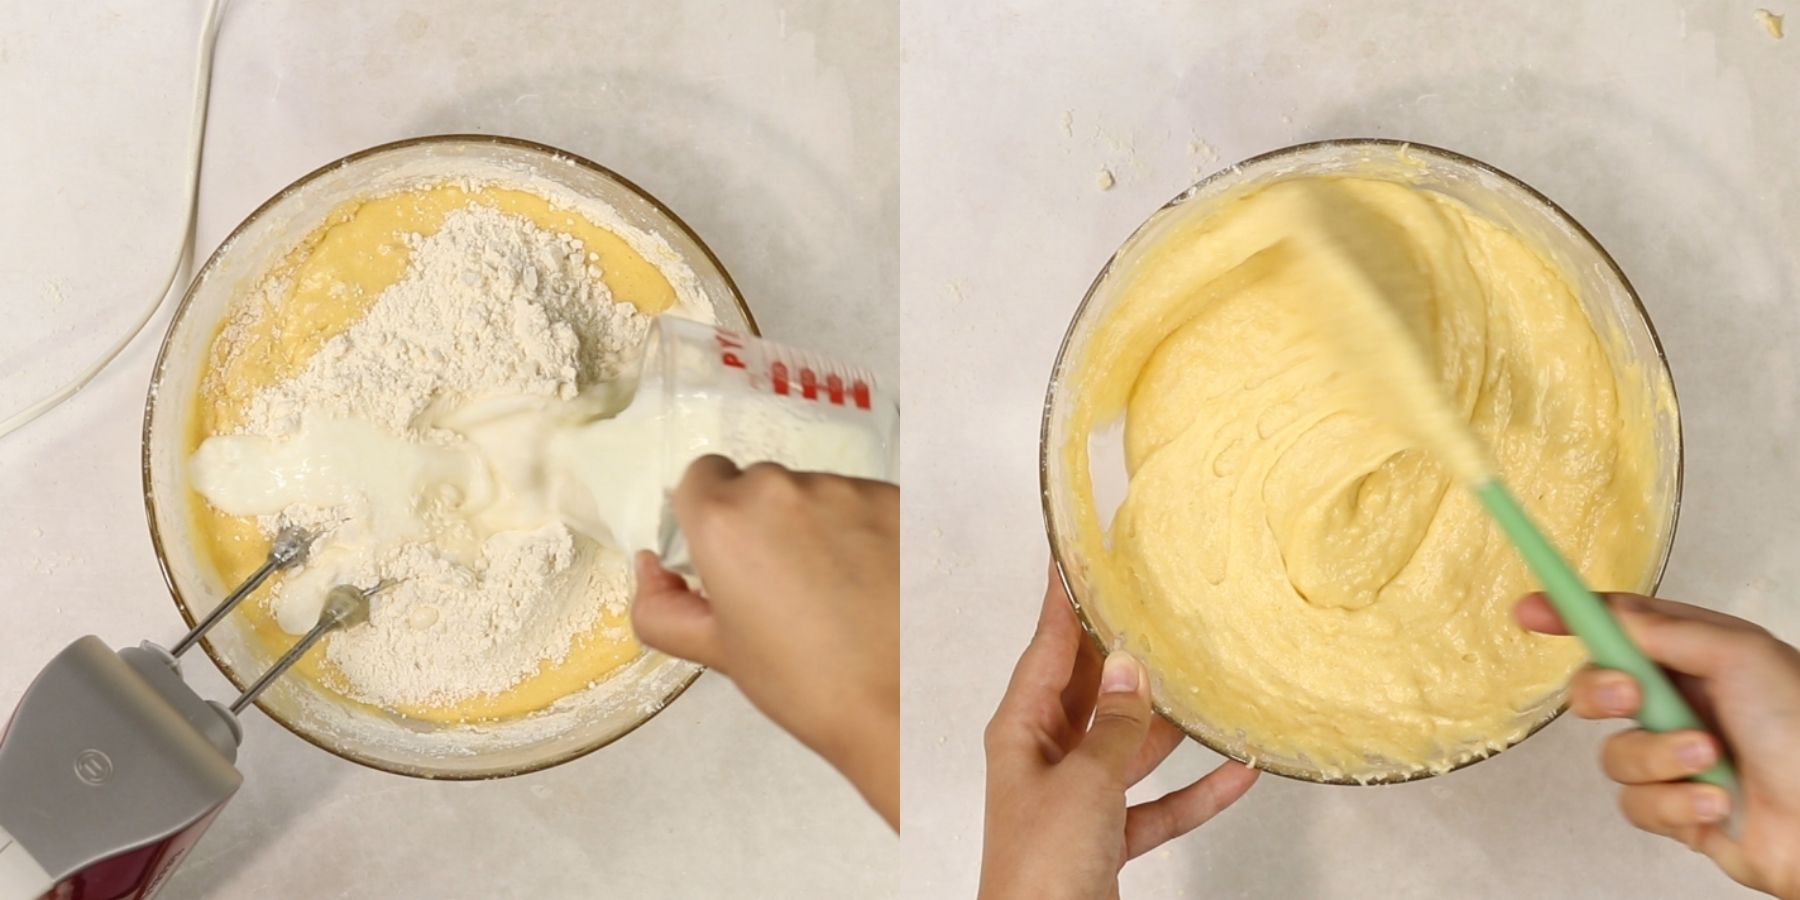 Cake process shots.